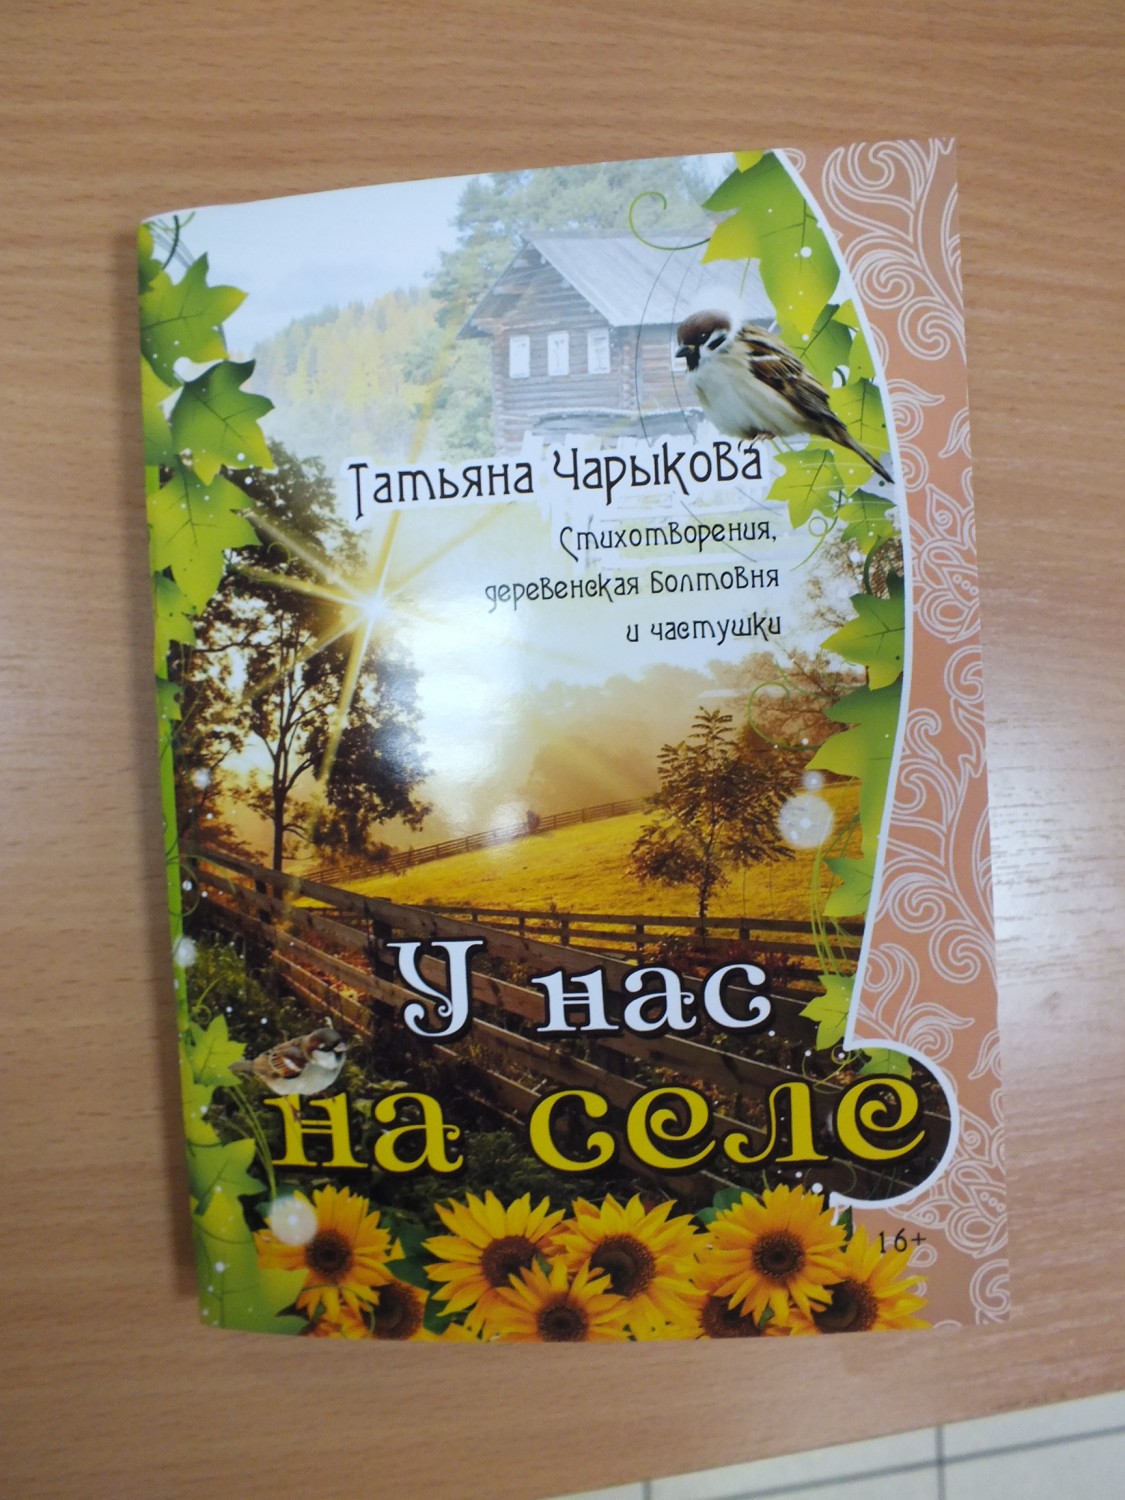 В Новокузнецке пройдет презентация книги Татьяны Чарыковой 